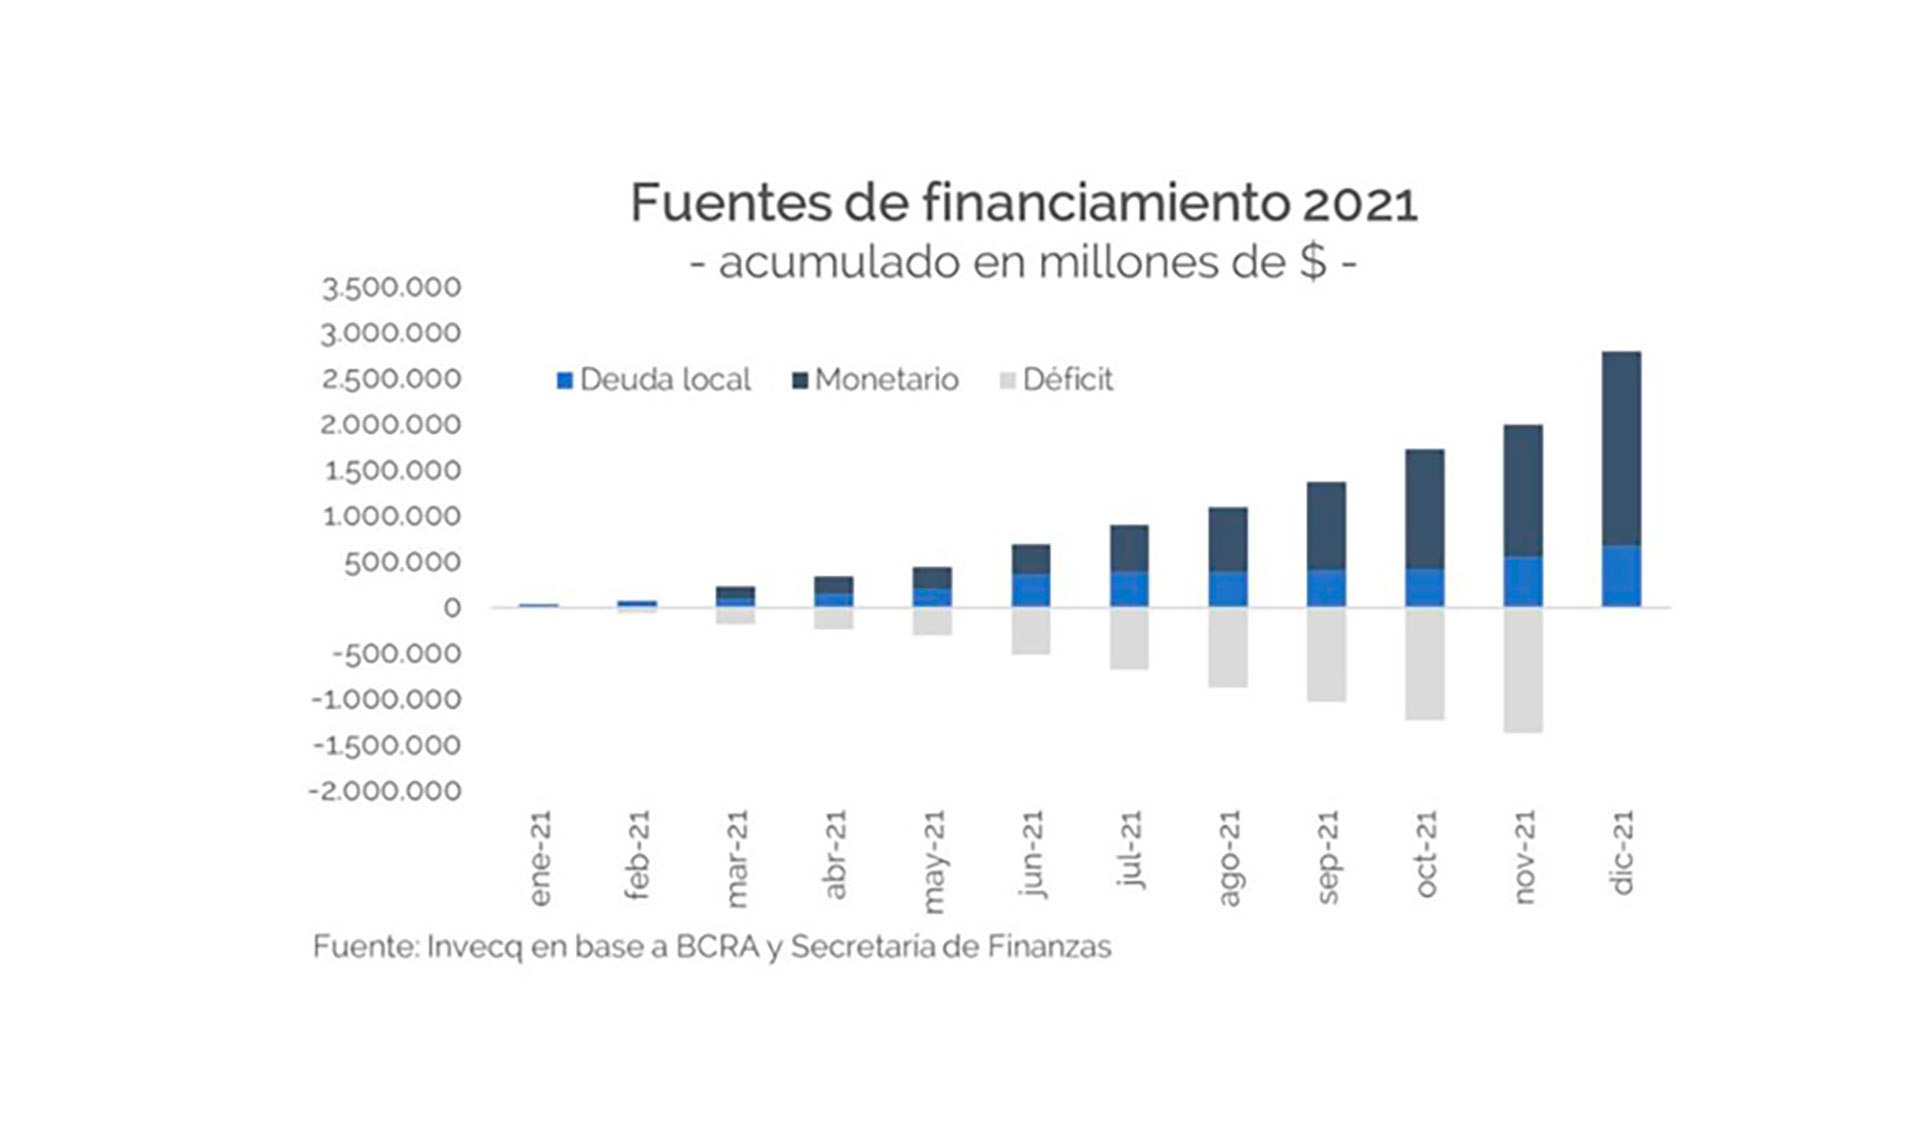 Cobertura del déficit fiscal: a medida que avanzó 2021 fue bajando la financiación voluntaria y aumentando la emisión del BCRA